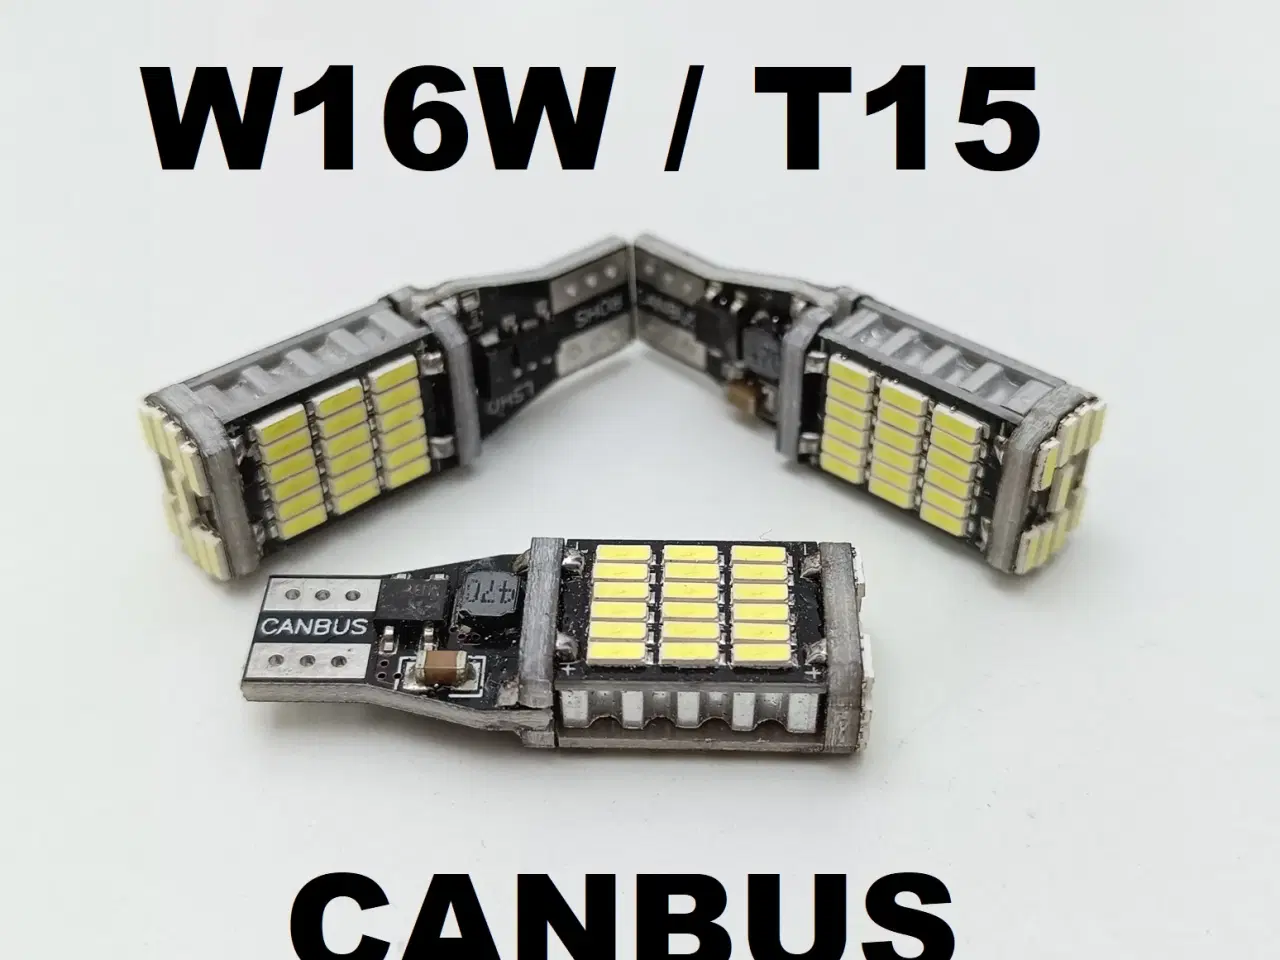 Billede 1 - NY! Stærke W16W / T15 45 LED Pære med CANBUS